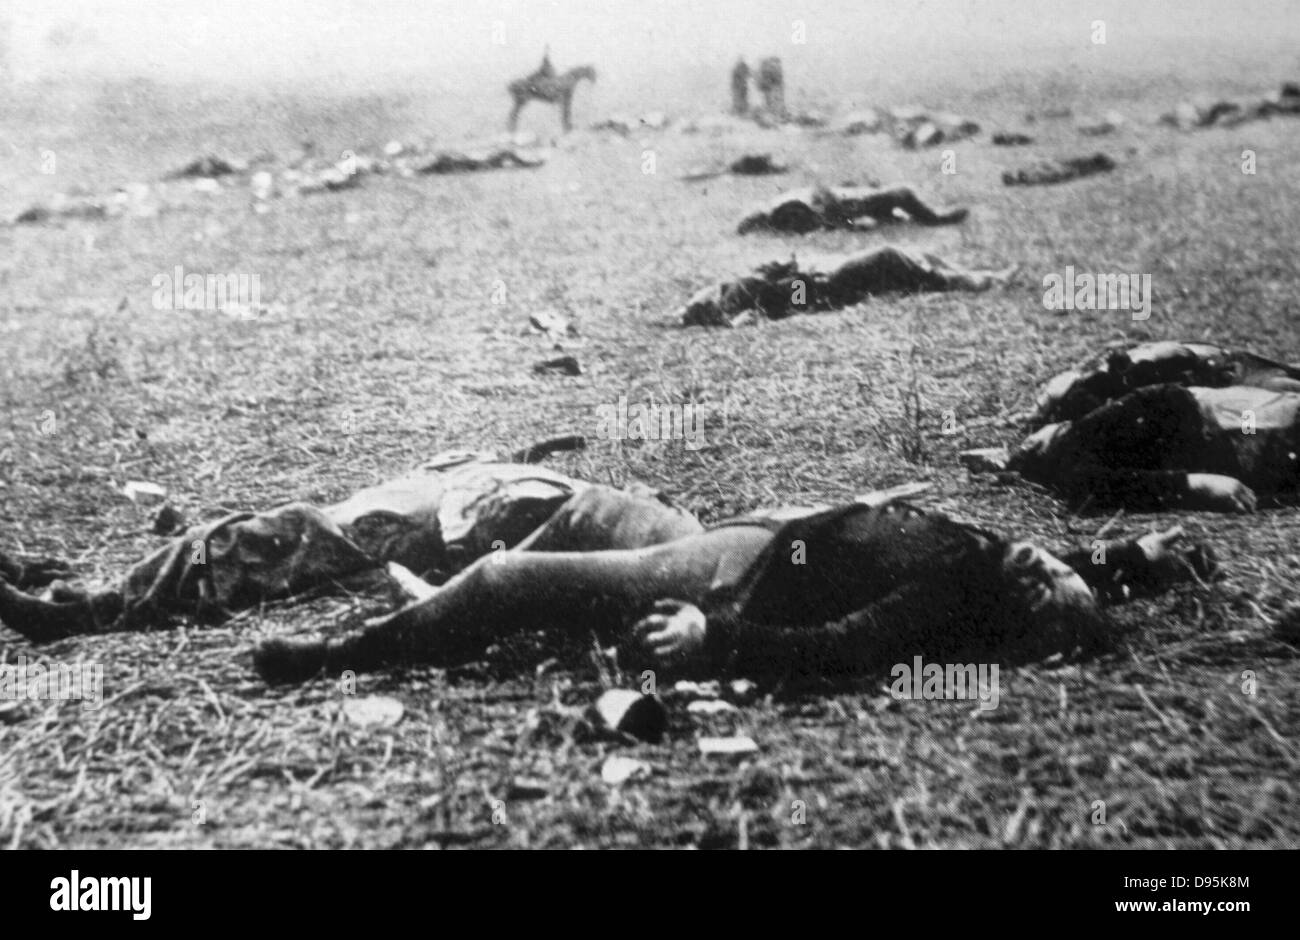 Guerra Civil americana: la muerte en una mañana brumosa. Fotografiado en el campo de Gettysburg el 5 de julio de 1863. Foto de stock